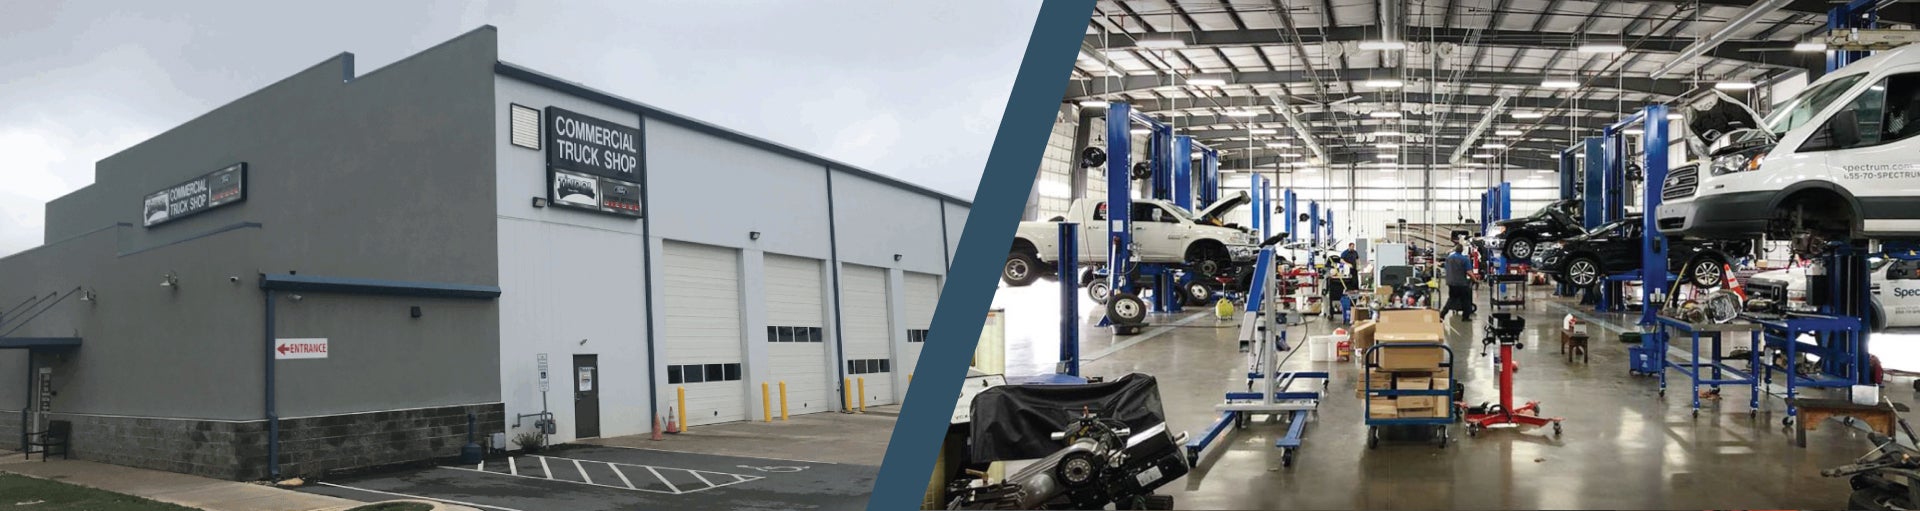 Tindol Ford Commercial Vehicle Dealership Header | Charolette, NC